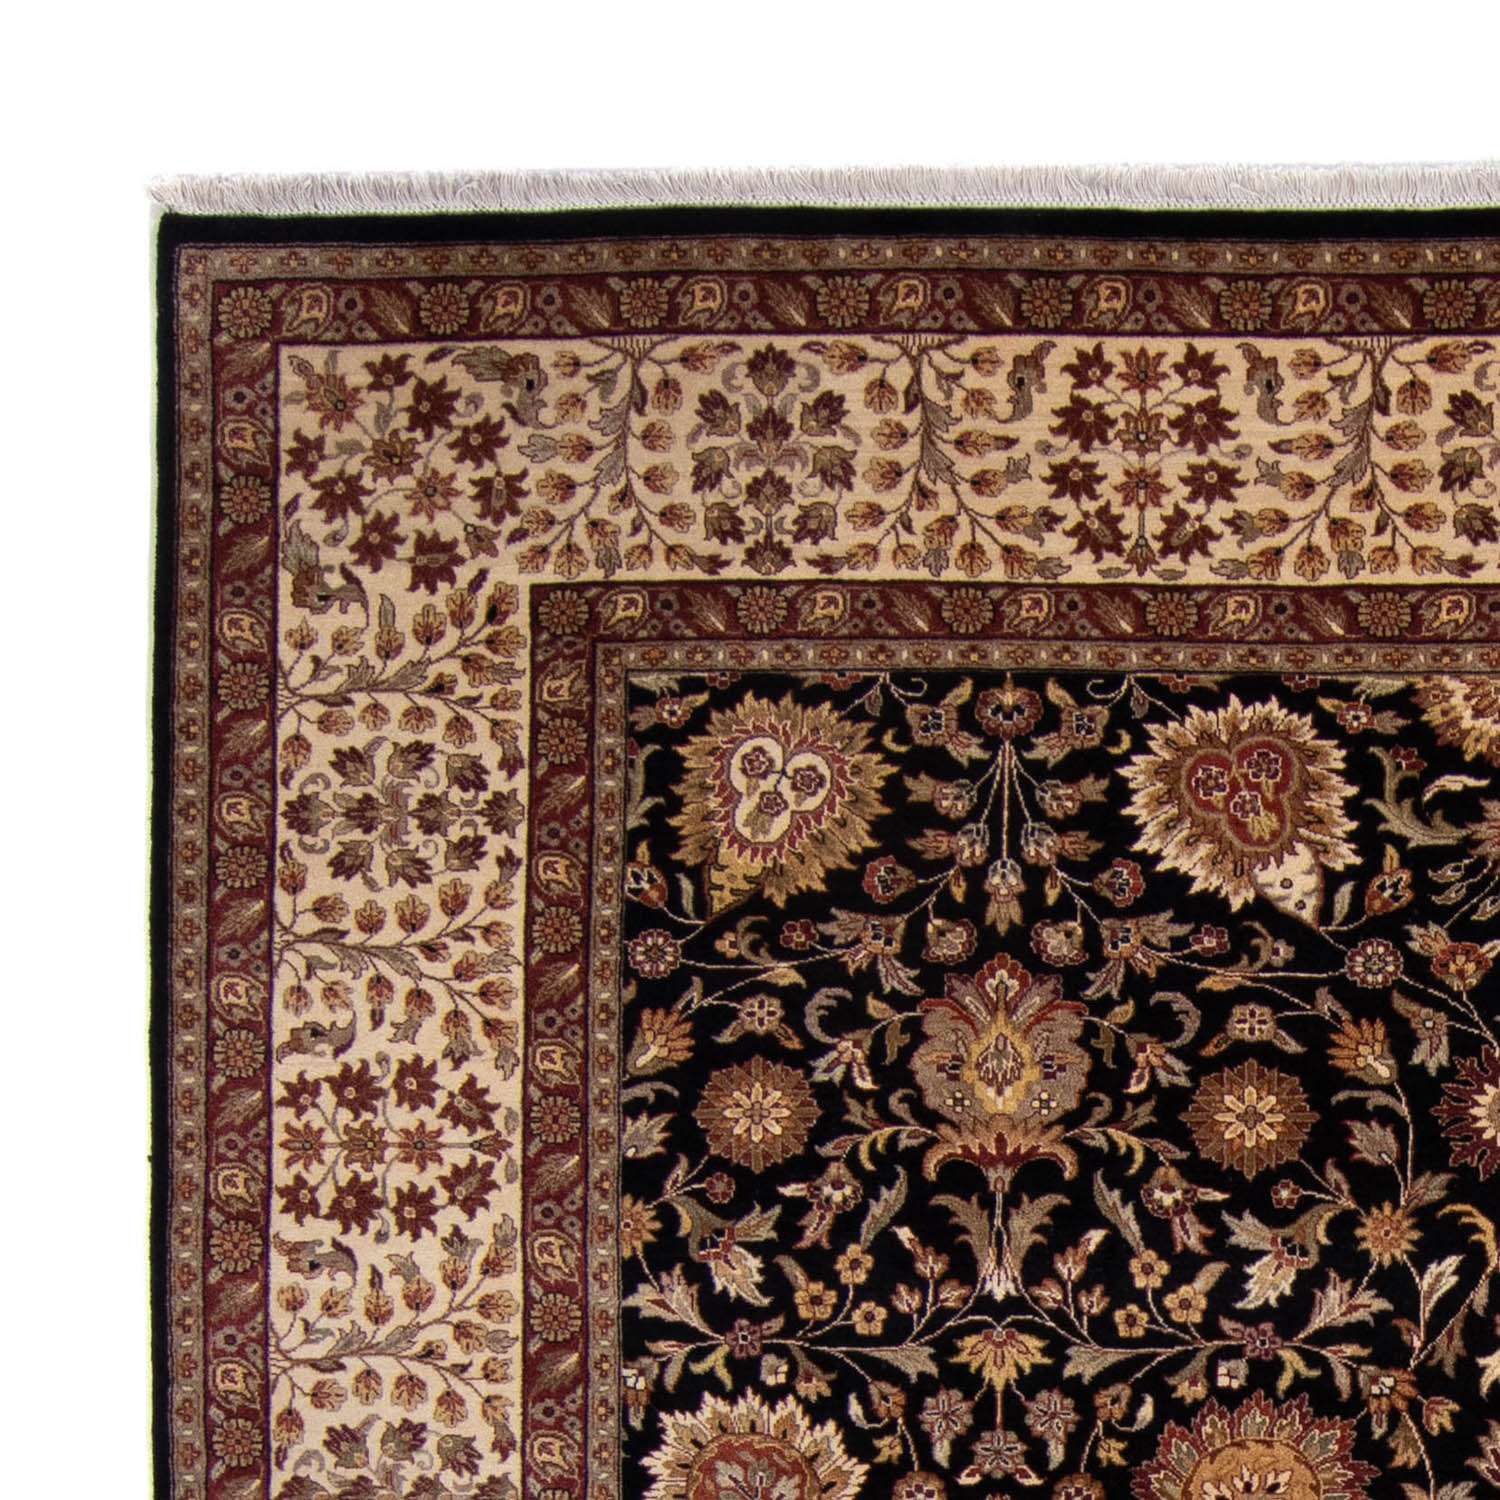 Persisk teppe - Tabriz - 312 x 244 cm - mørkeblå